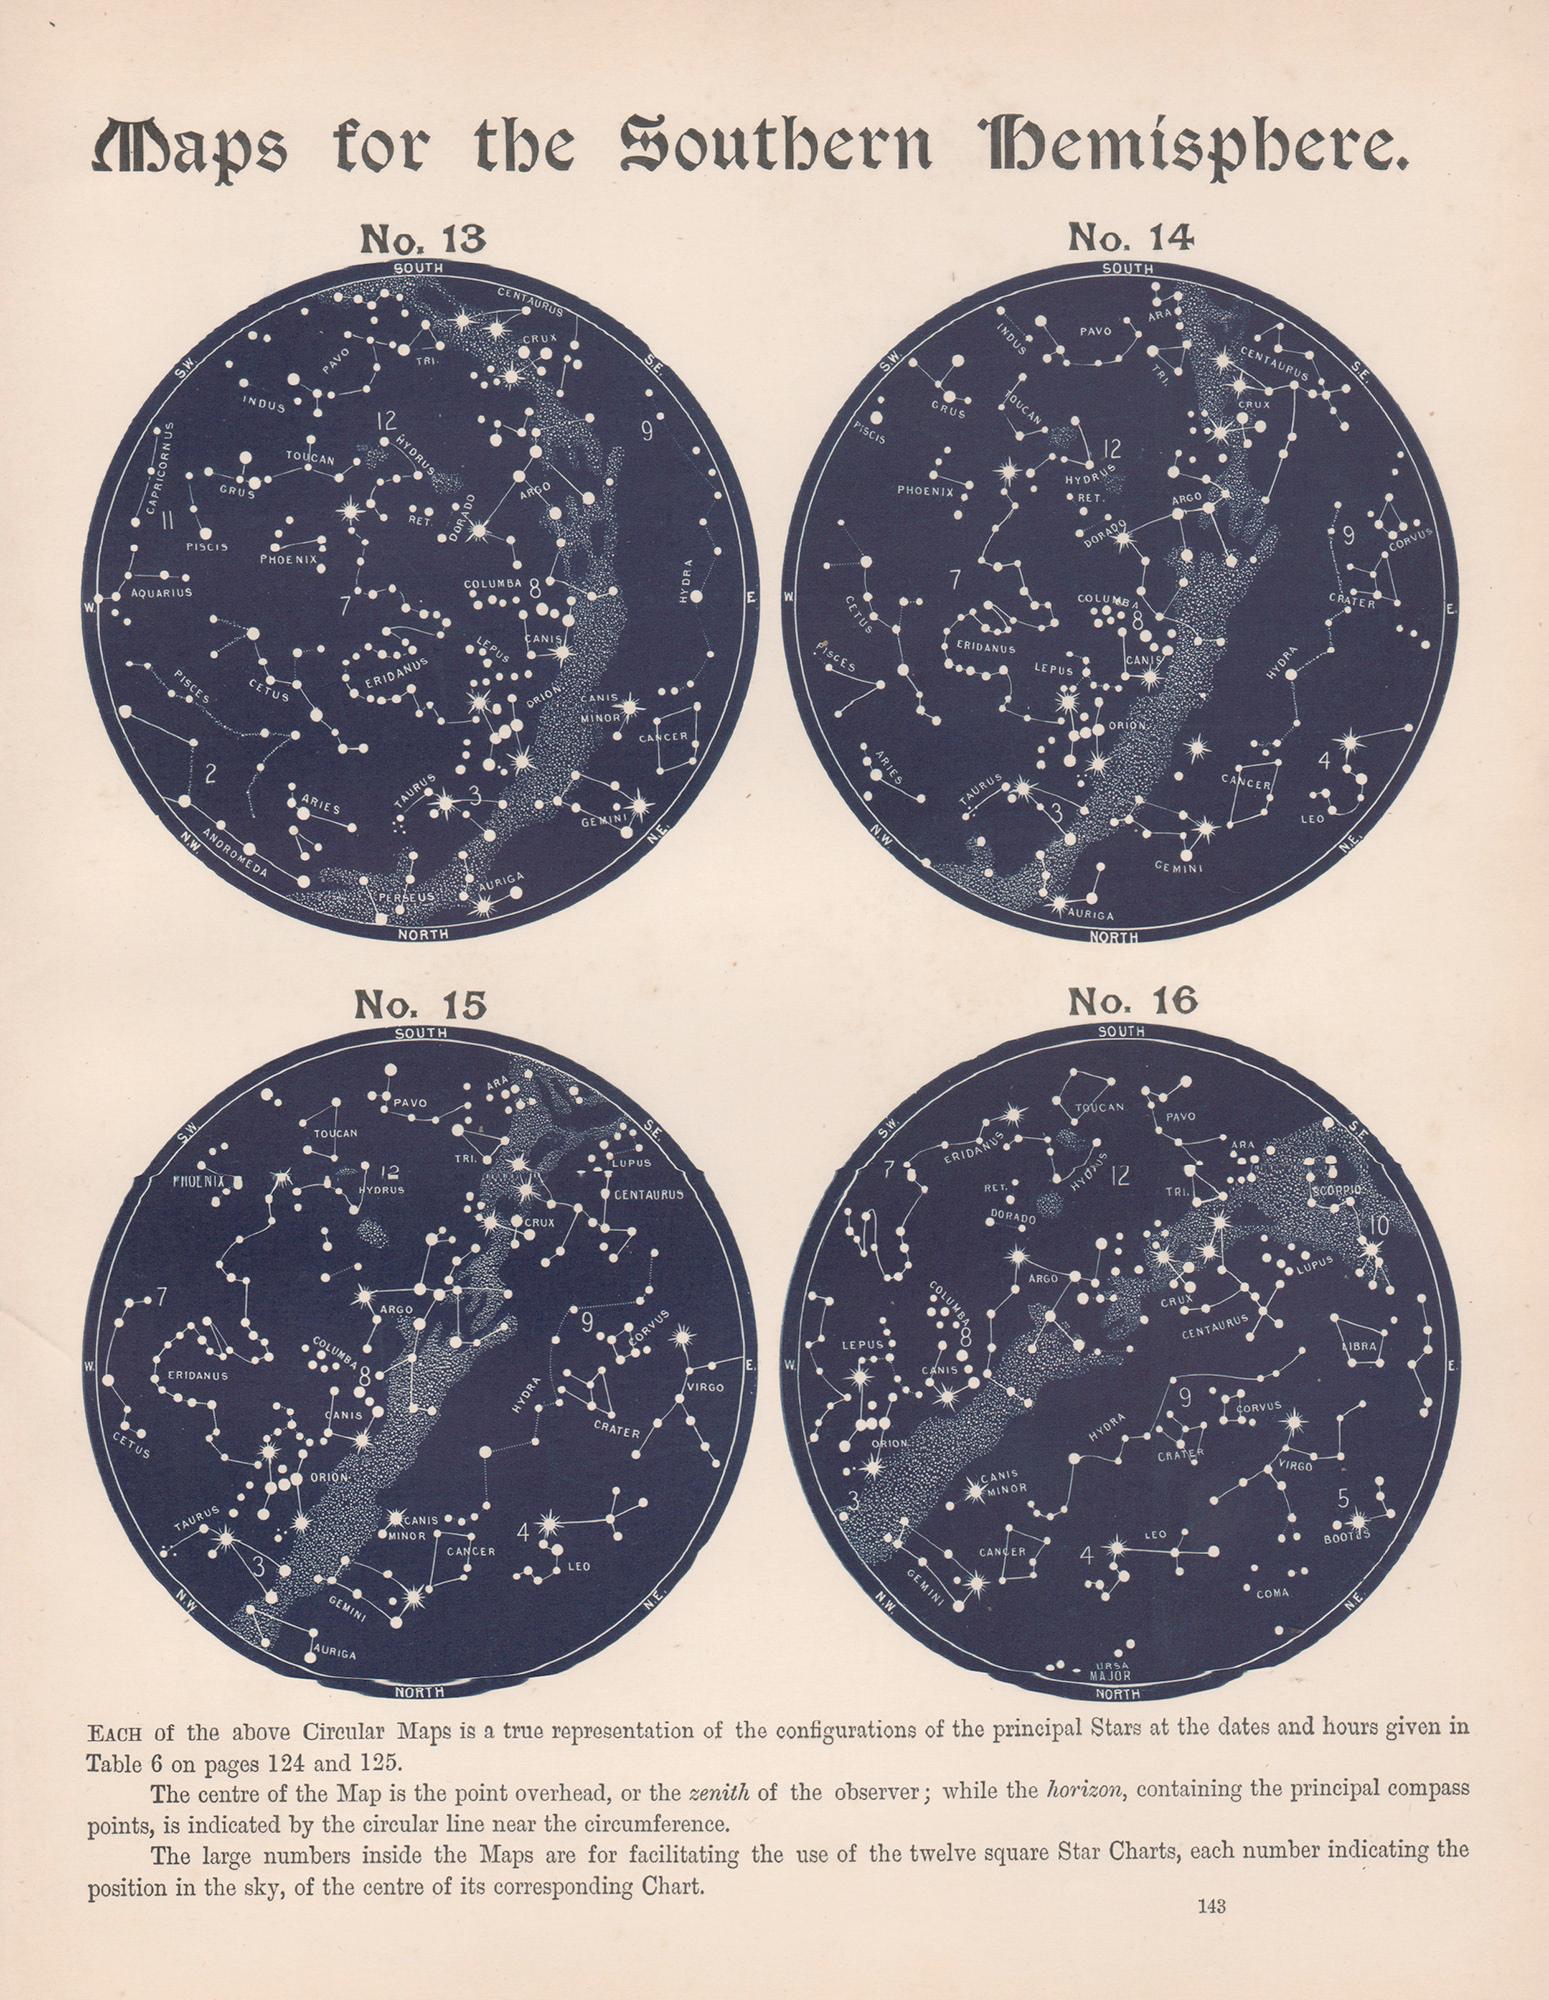 Print William Peck - Cartes de l'hémisphère sud. Antiquité - Astronomie - Gravure sur constellation d'étoiles